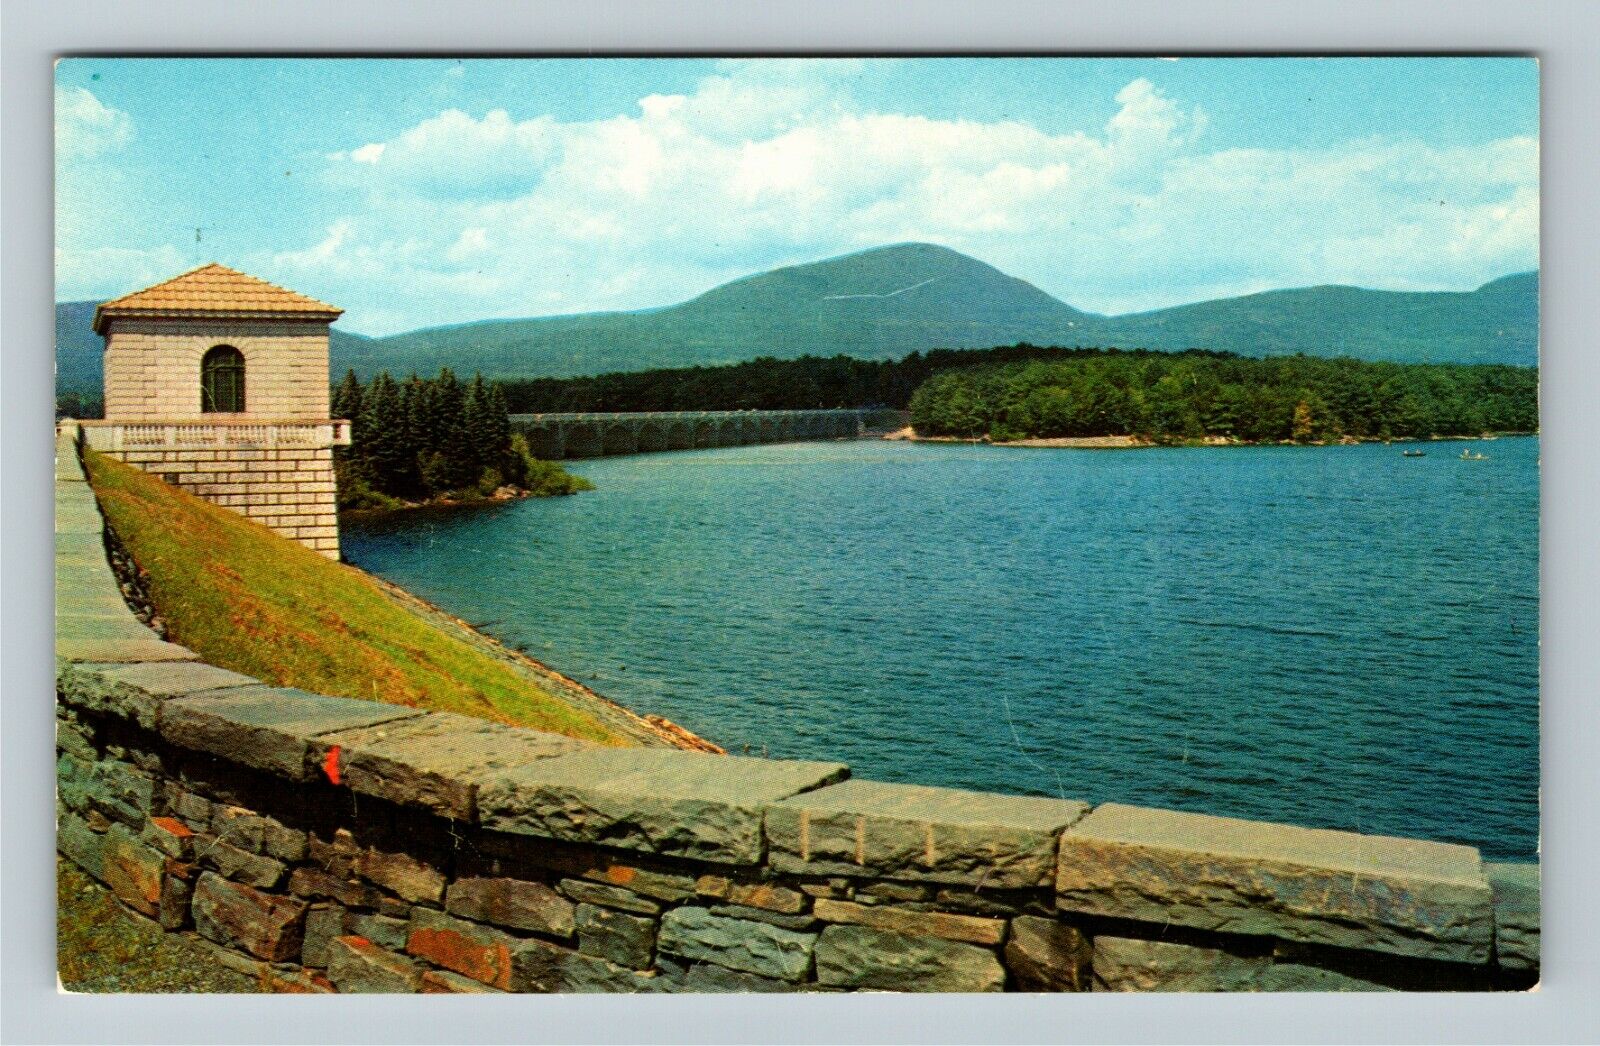 Kingston NY-New York, Ashokan Reservoir, Mountains and Lake, Vintage Postcard